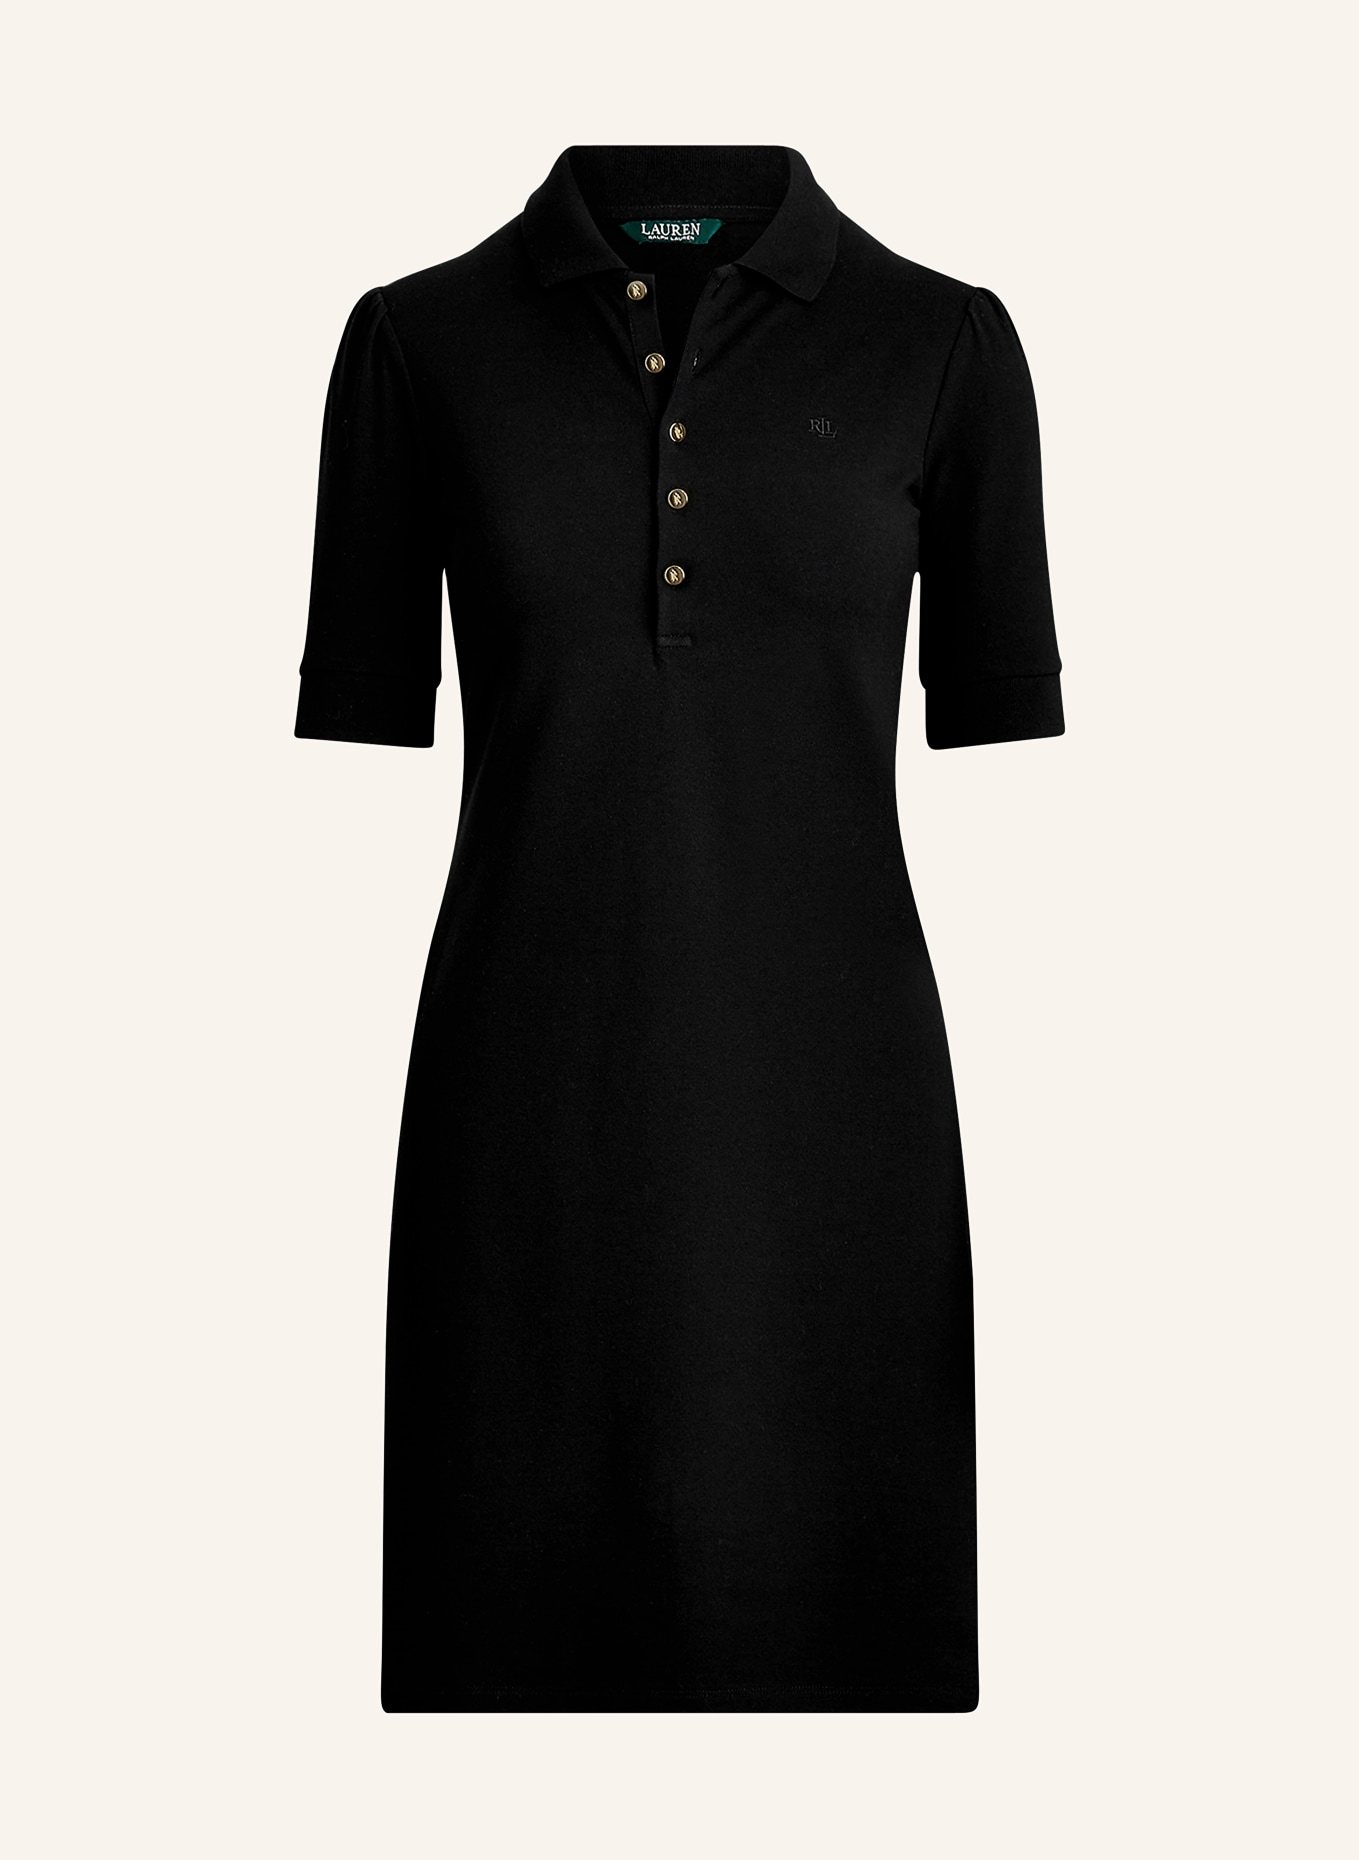 LAUREN RALPH LAUREN Piqué polo dress, Color: BLACK (Image 1)